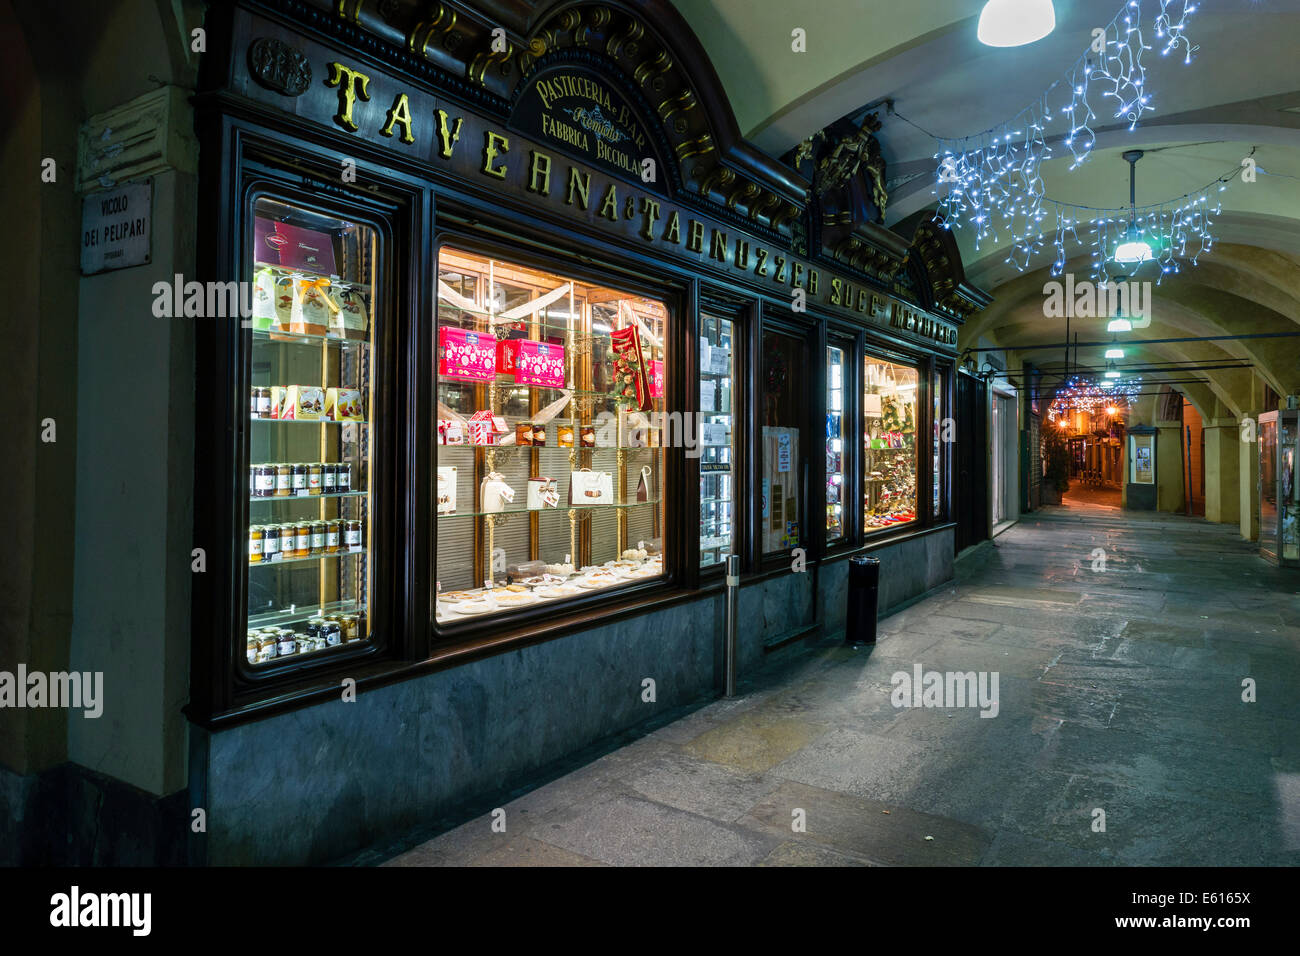 Vitrine d'une Pasticceria, pâtisserie et bar, sous les arcades de la Piazza Cavour, dans la nuit, Vercelli, Piémont, Italie Banque D'Images